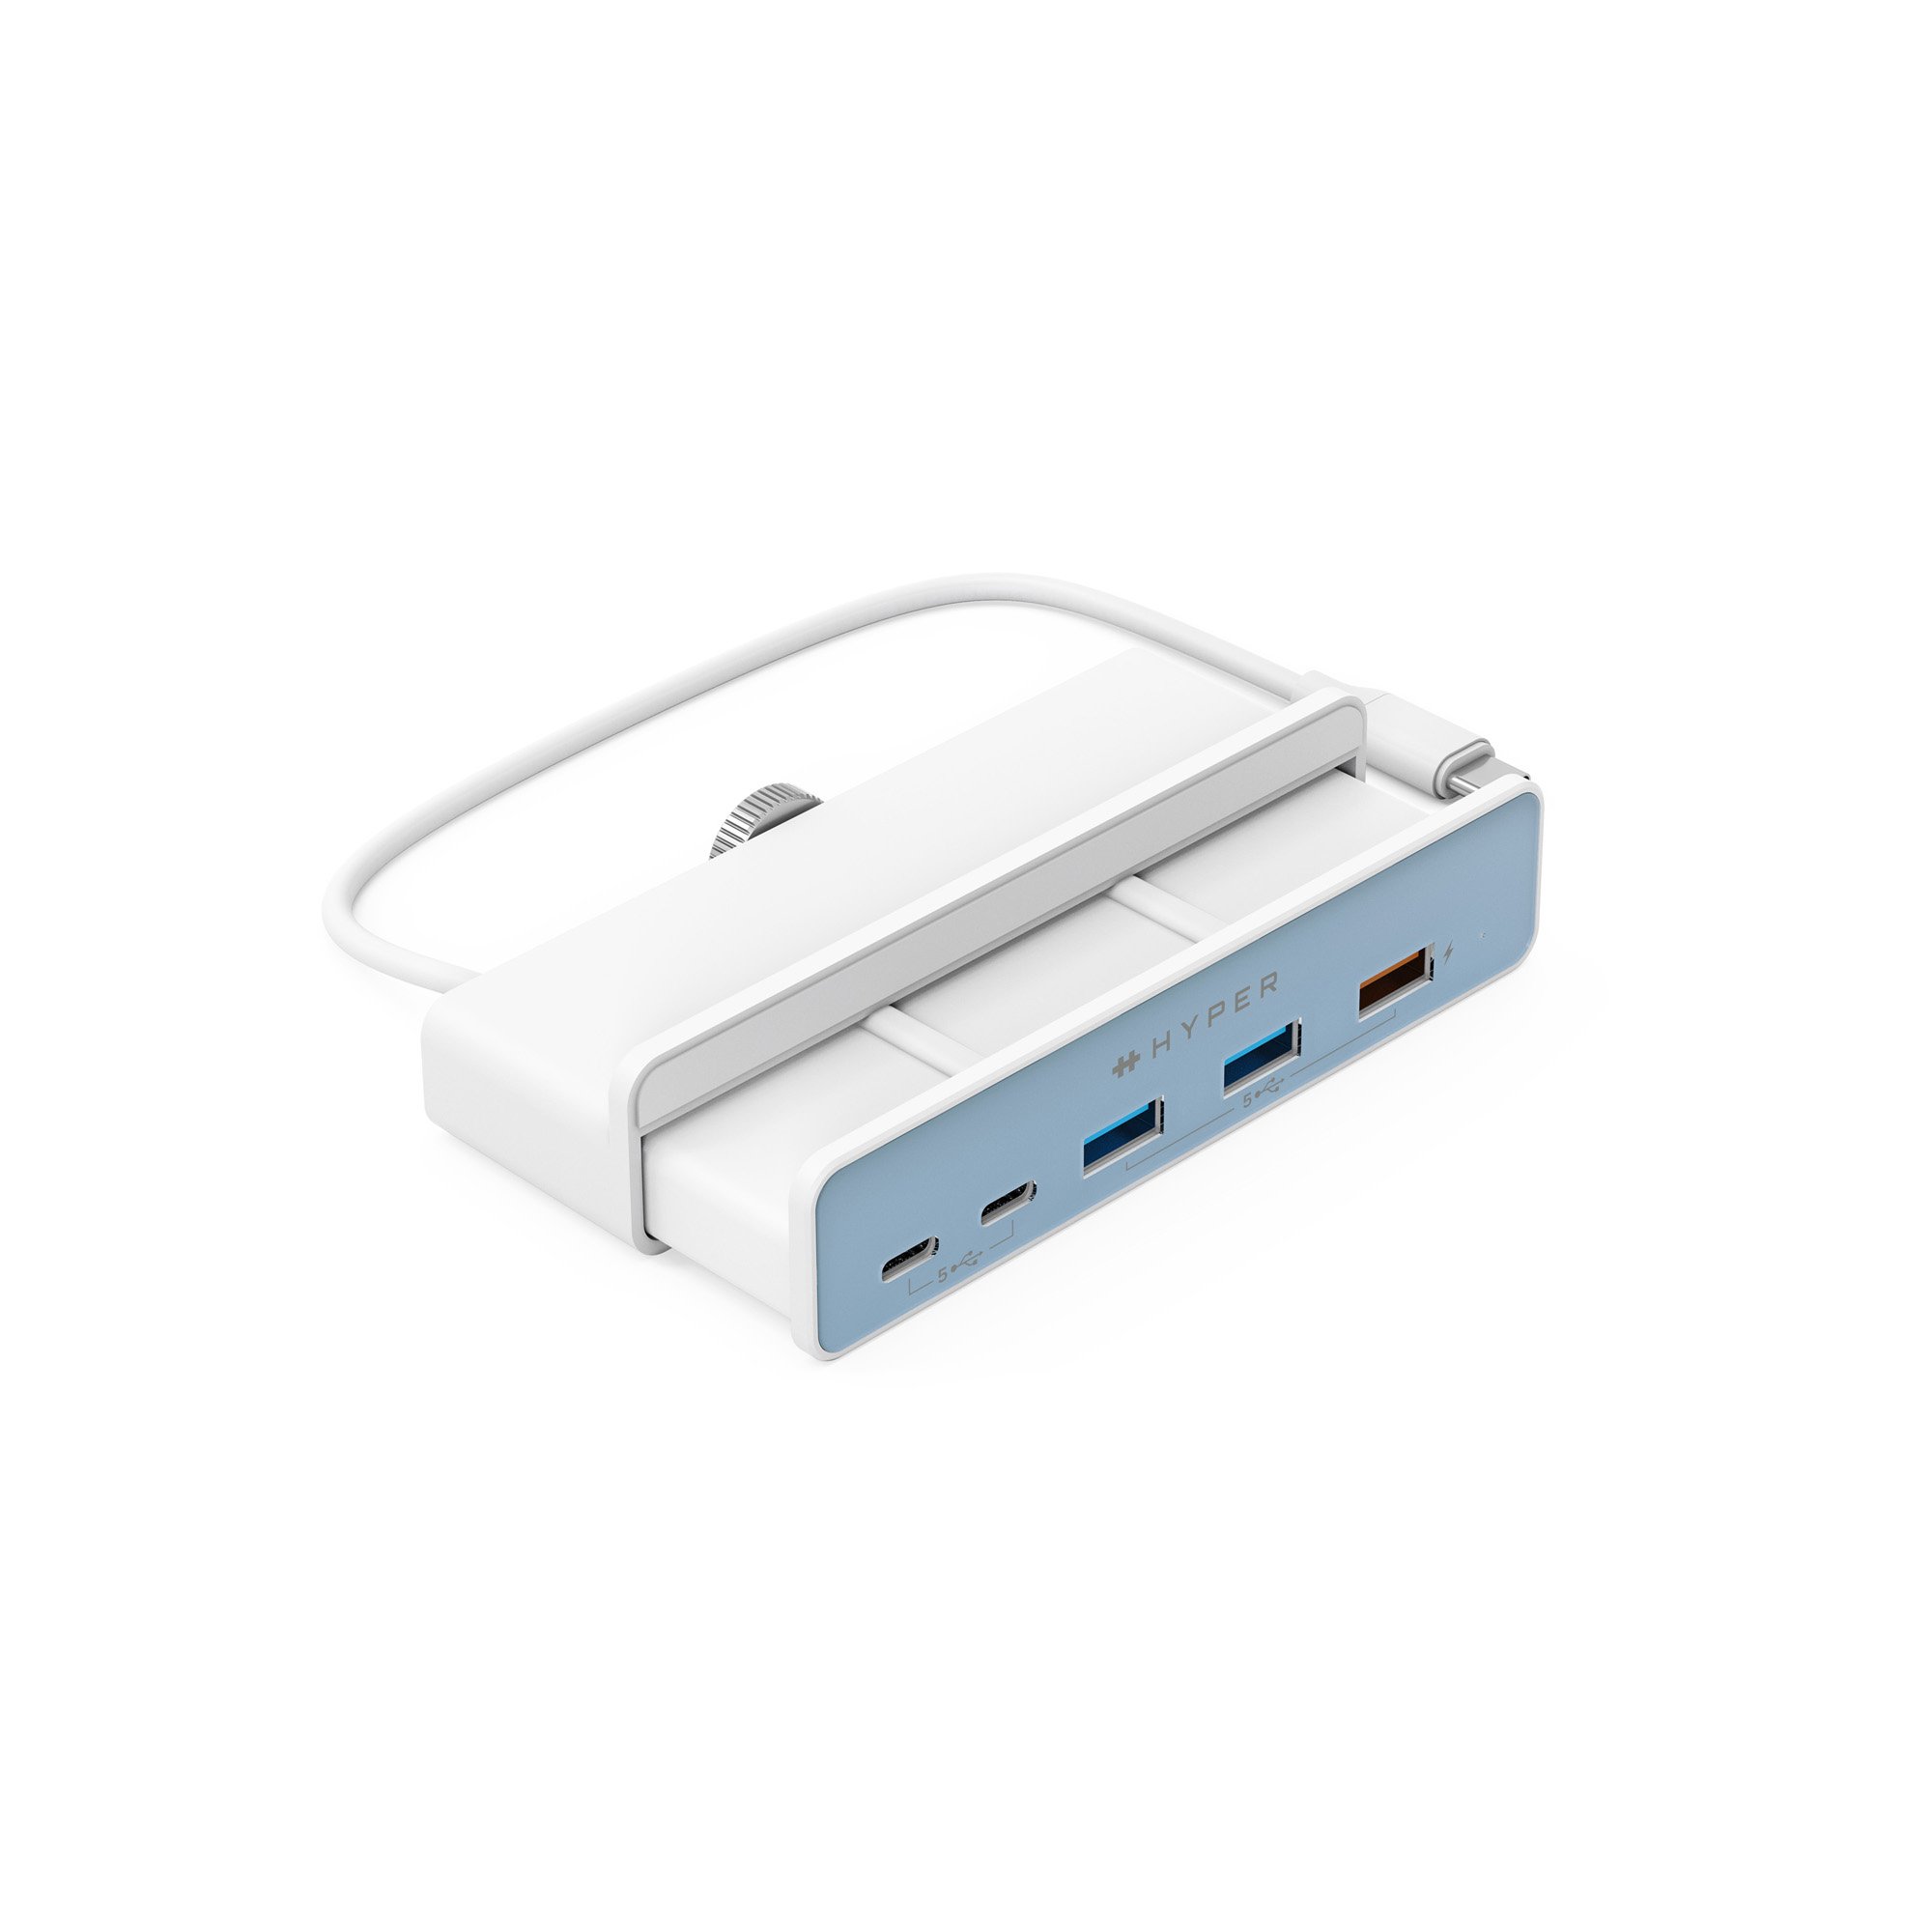 CỔNG CHUYỂN CHUYÊN DỤNG cho iMac 24″ HYPERDIVE 5-IN-1 USB-C HUB HD34A6 - HÀNG CHÍNH HÃNG